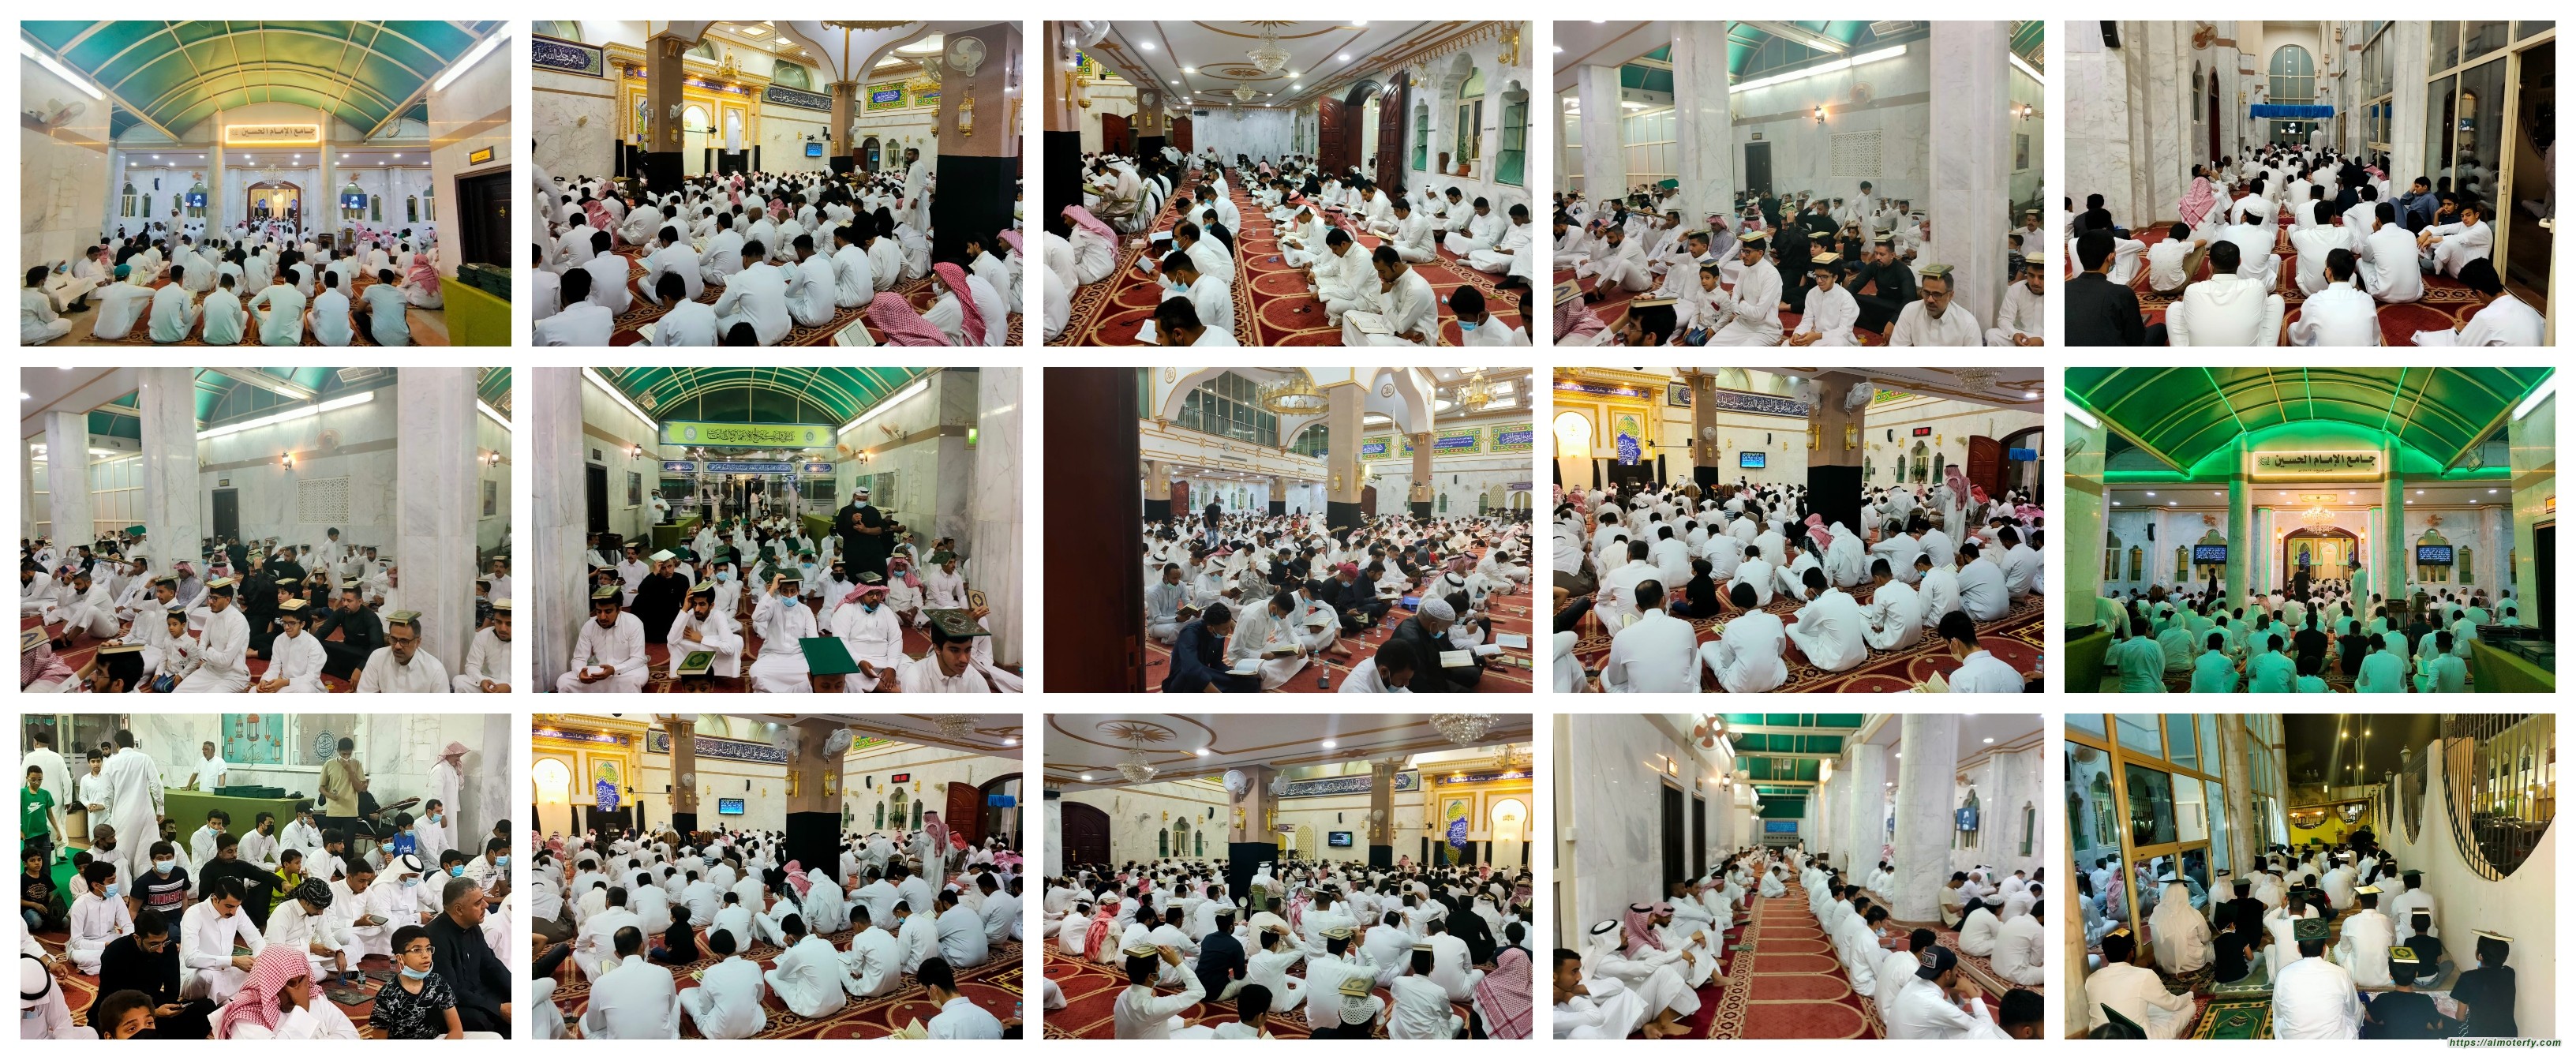 جموع المؤمنين يحيون ليالي القدر في جامع الامام الحسين بروحانية .